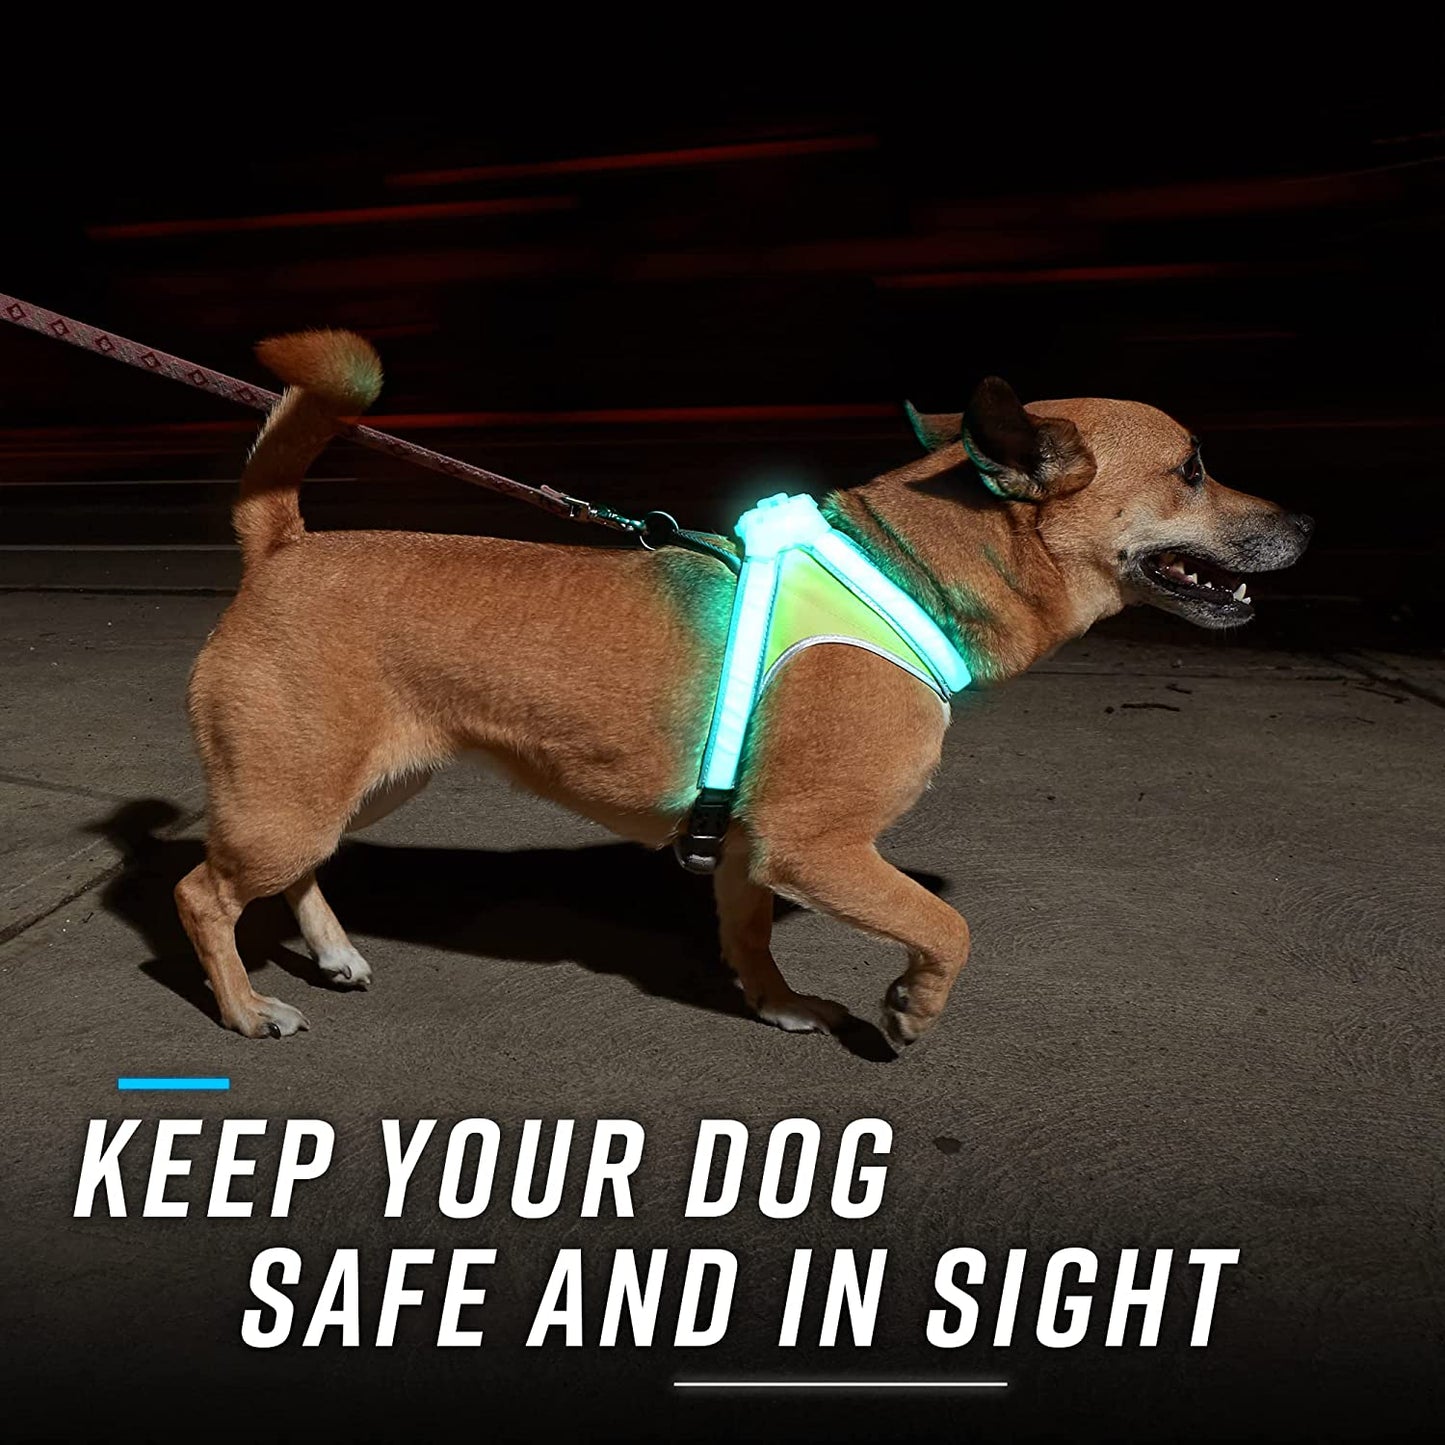 Lighthound - Multicolor LED Illuminated, Reflective Dog Harness (Medium)